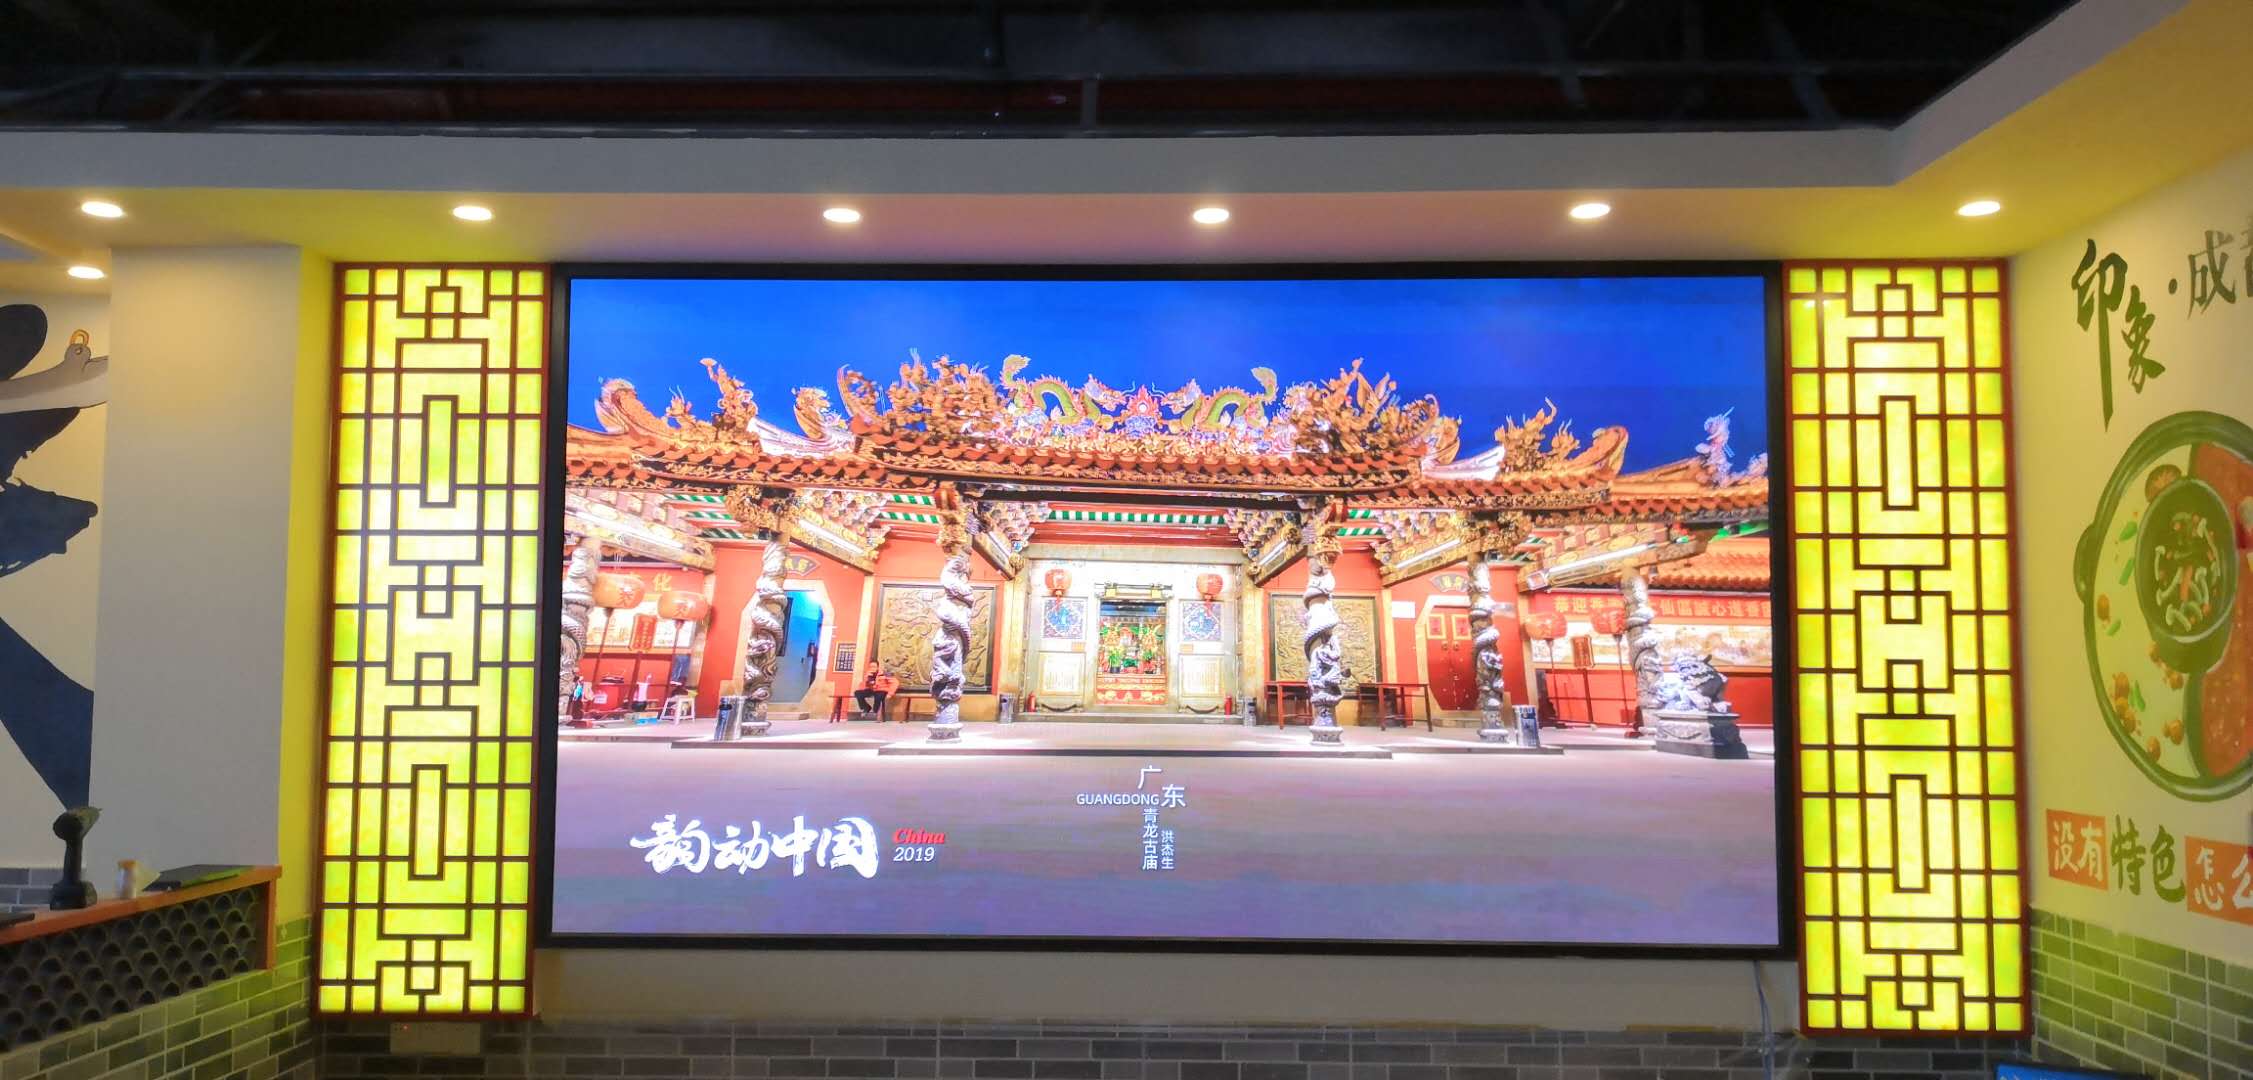 P2.5全彩LED顯示屏-壁掛支架-深圳市寶安區印象成都老火鍋